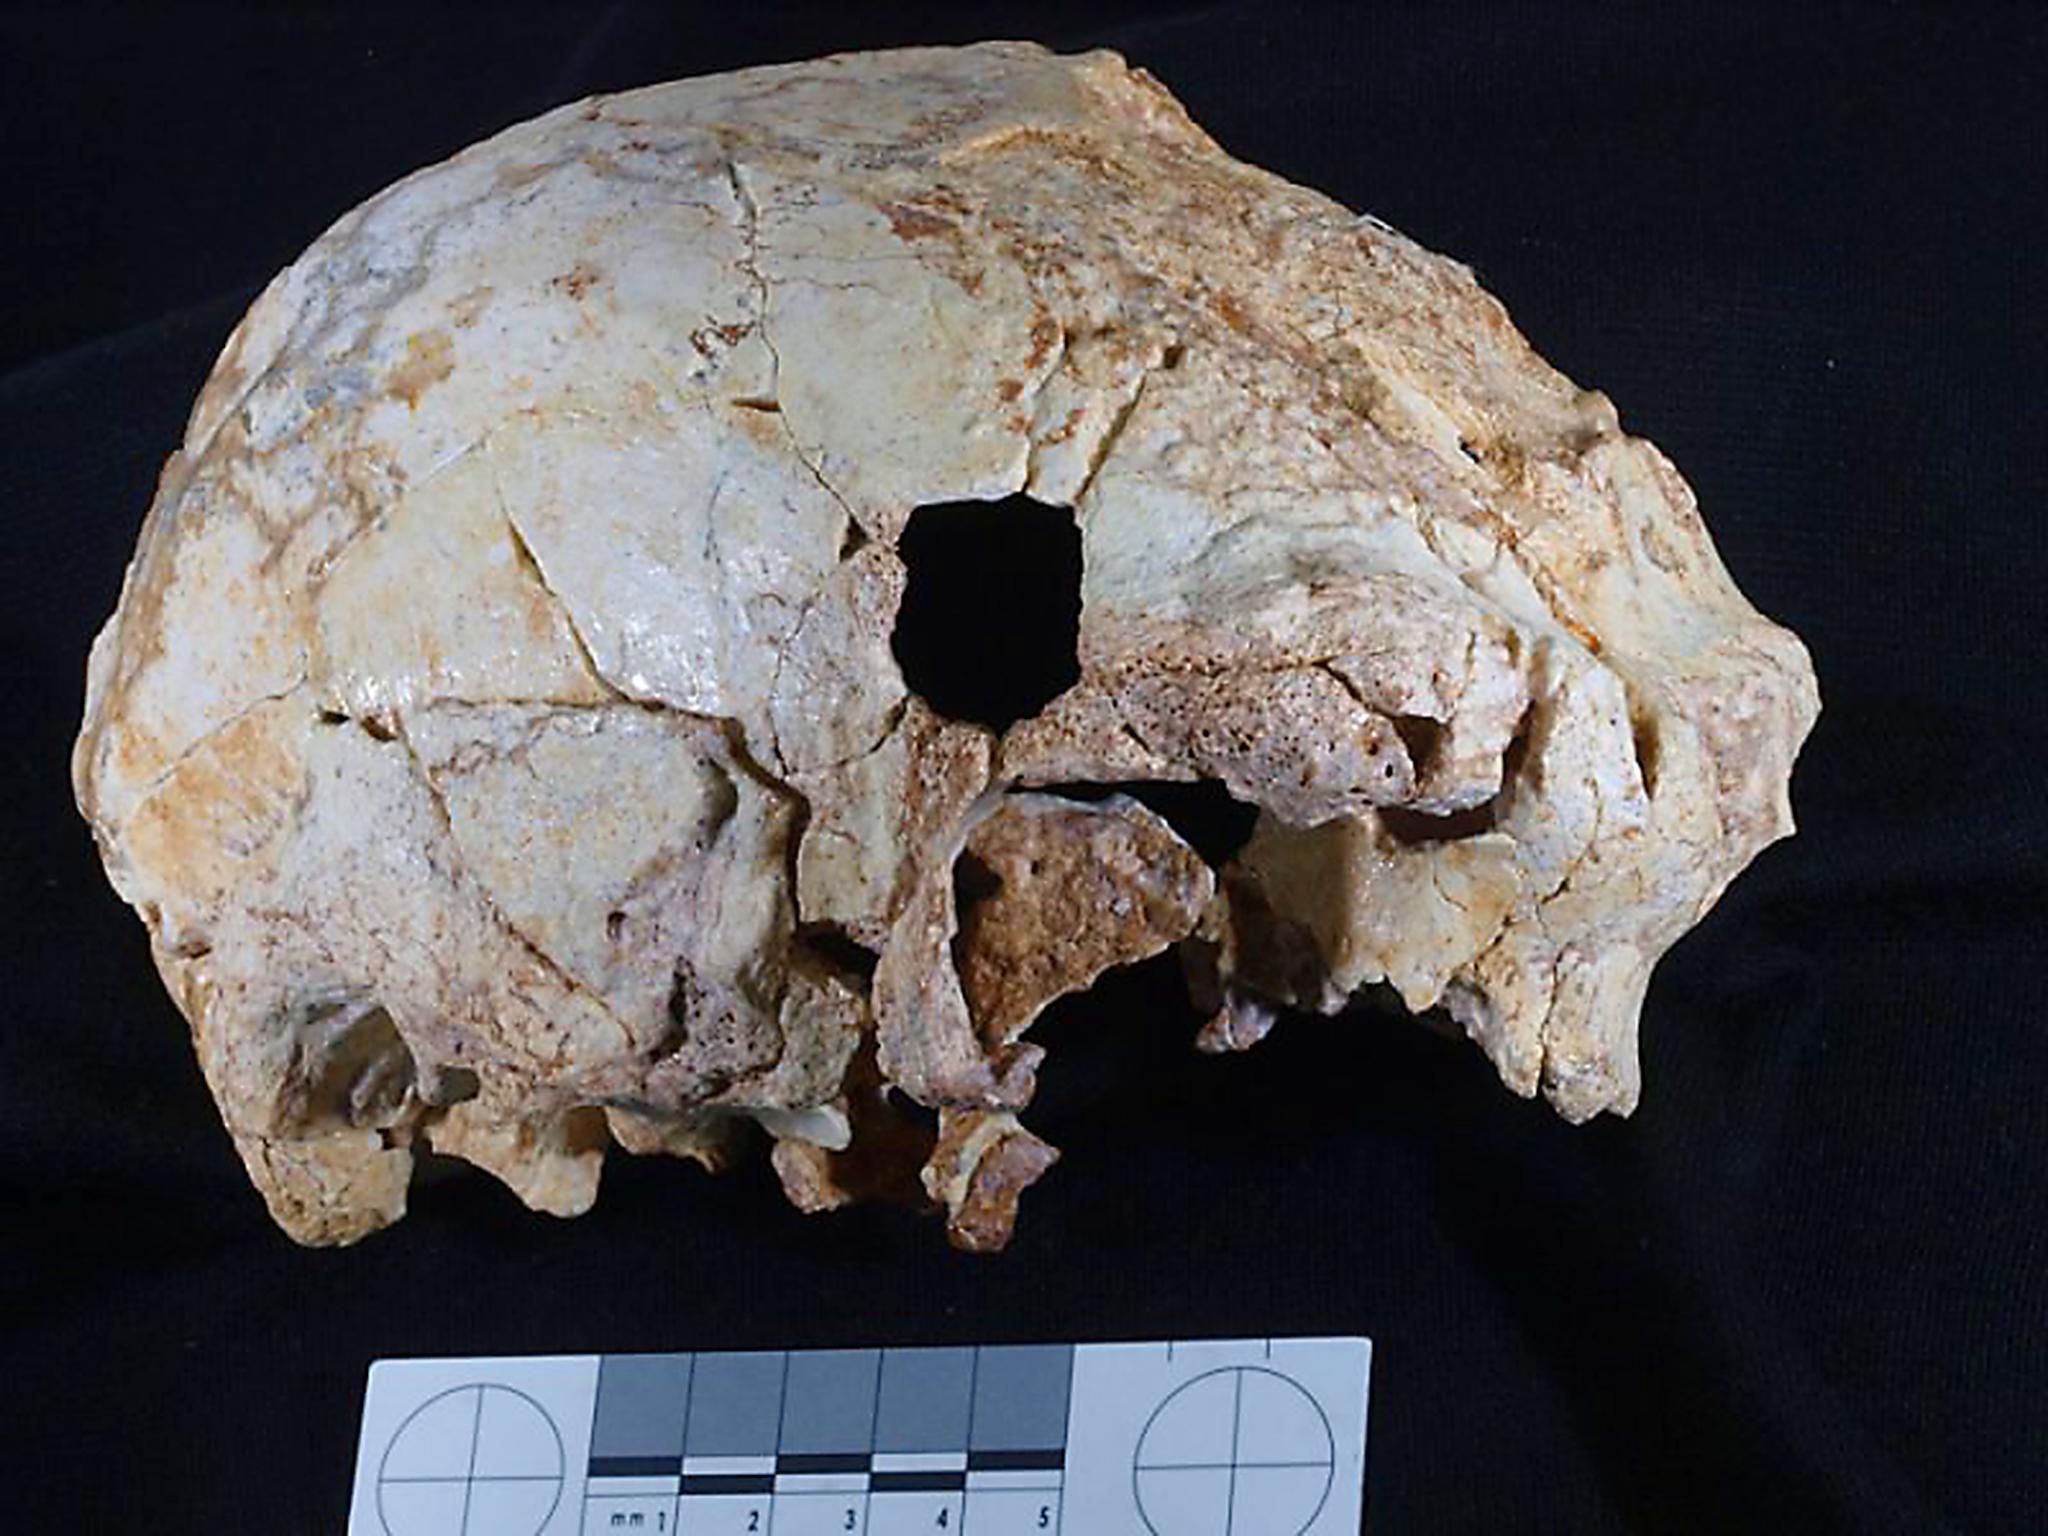 The Aroeira 3 cranium